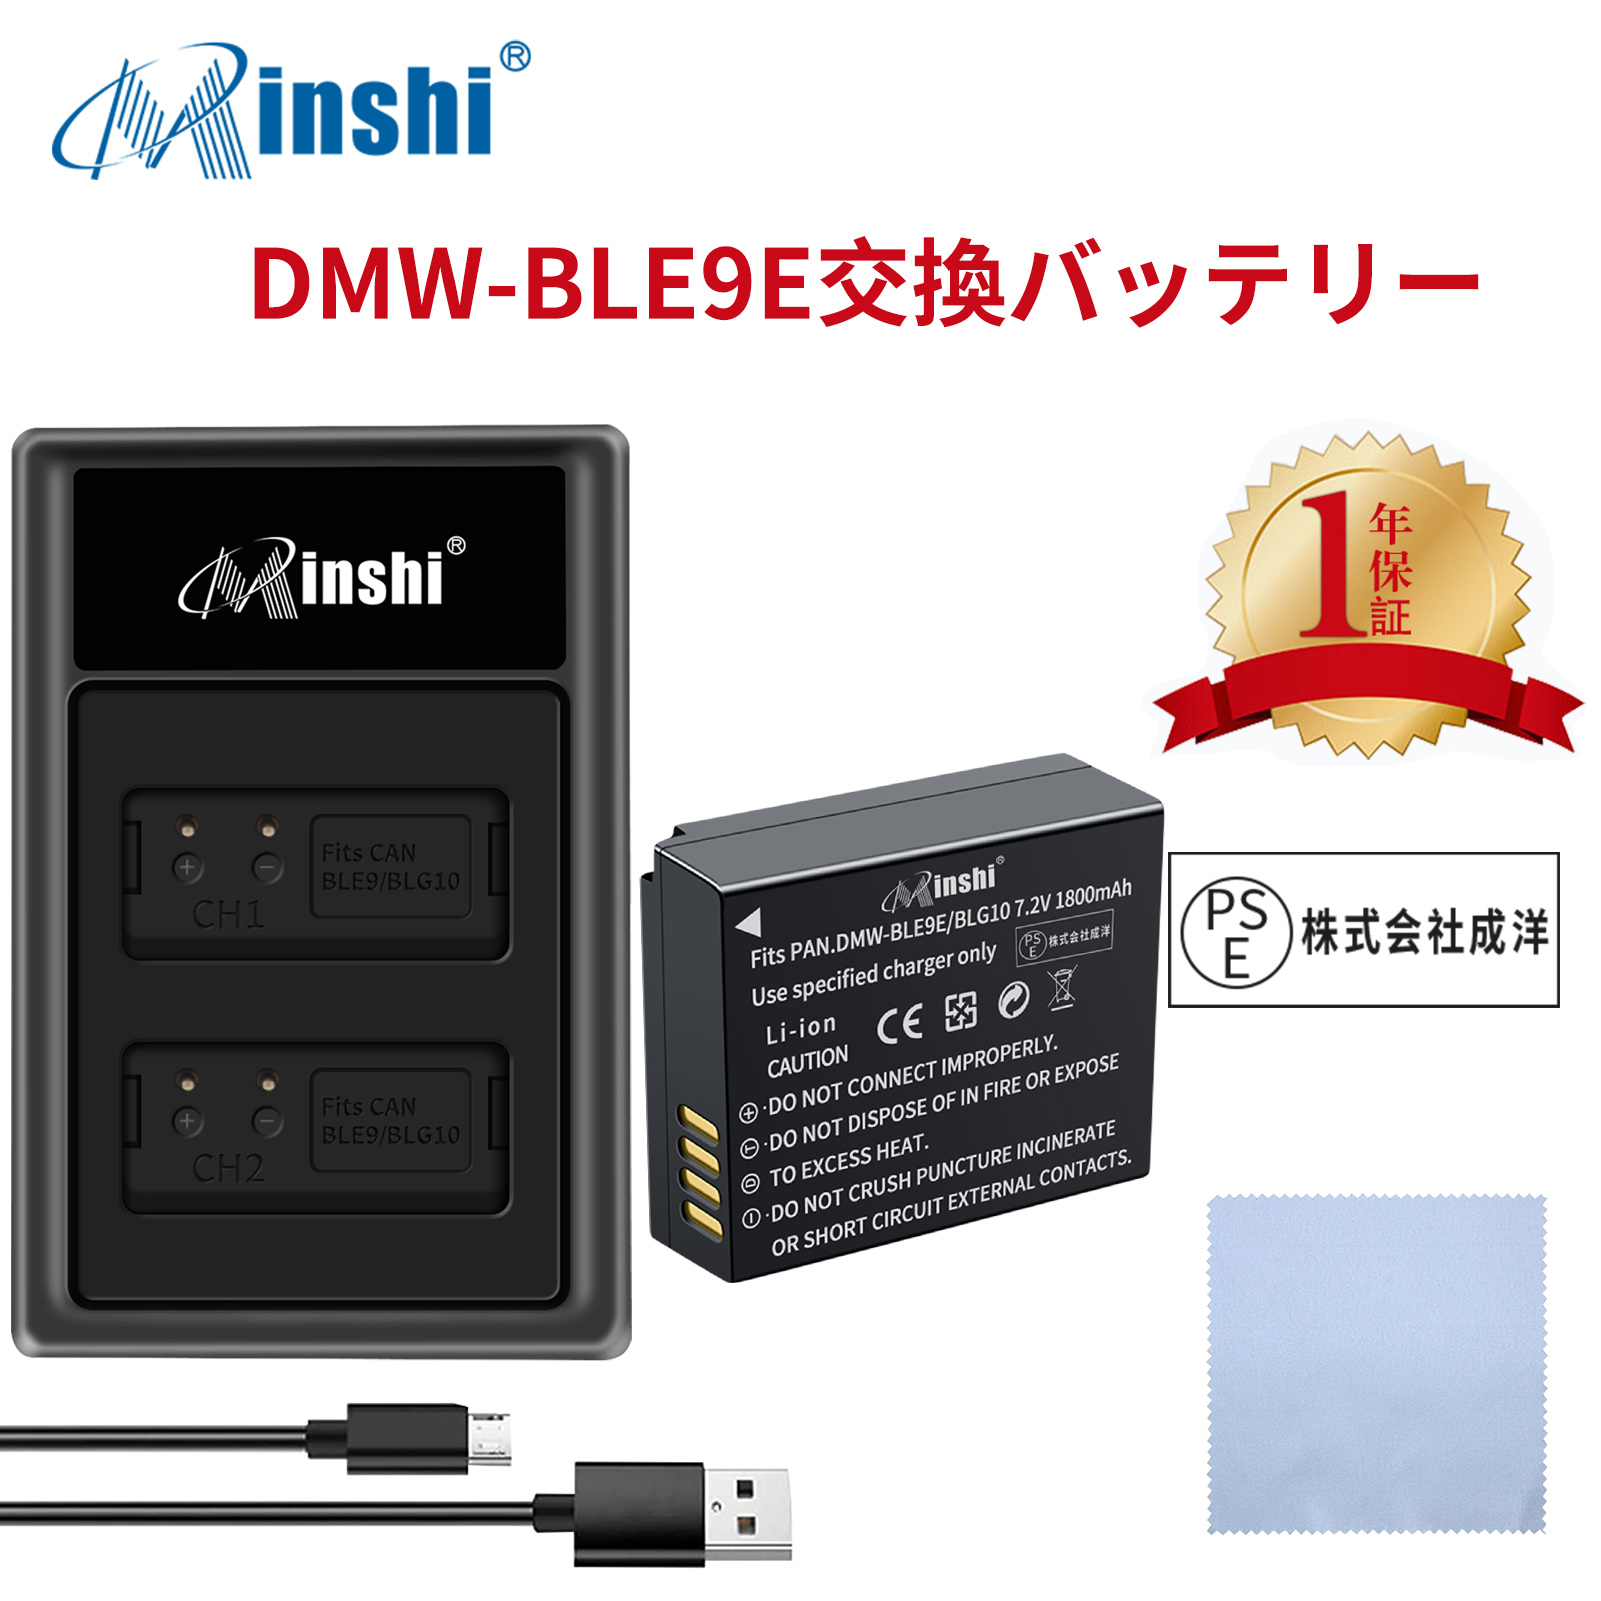 【セット】minshi Panasonic DMC-GX7MK2 DMW-BLE9   【1800mAh 7.2V】PSE認定済 高品質 DMW-BLG10 交換用バッテリー